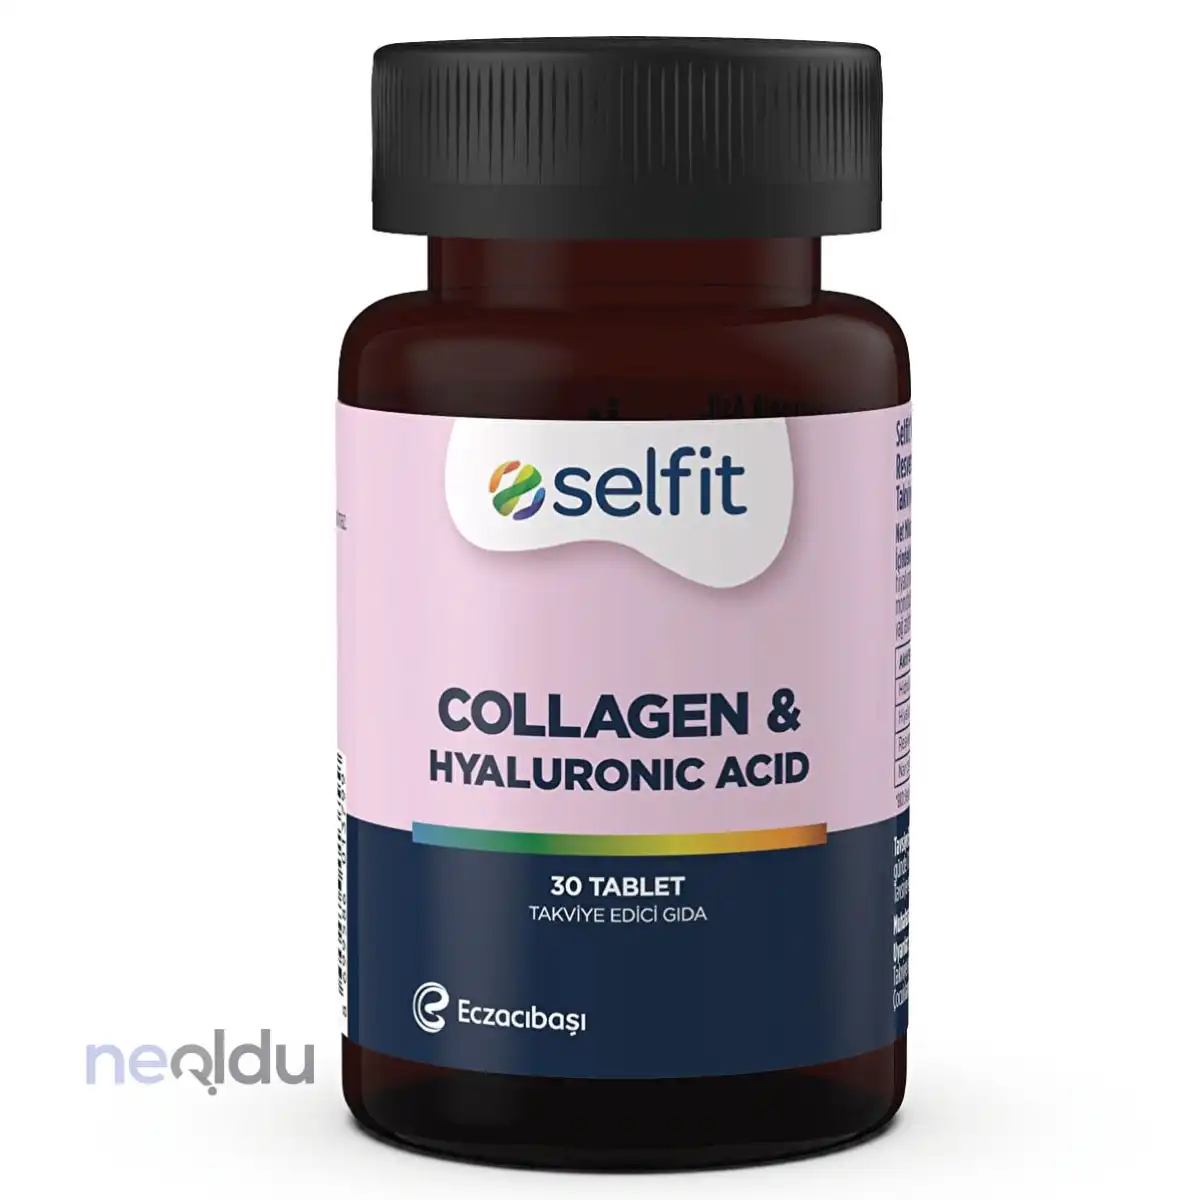 Selfit Collagen & Hyaluronic Acid İnceleme